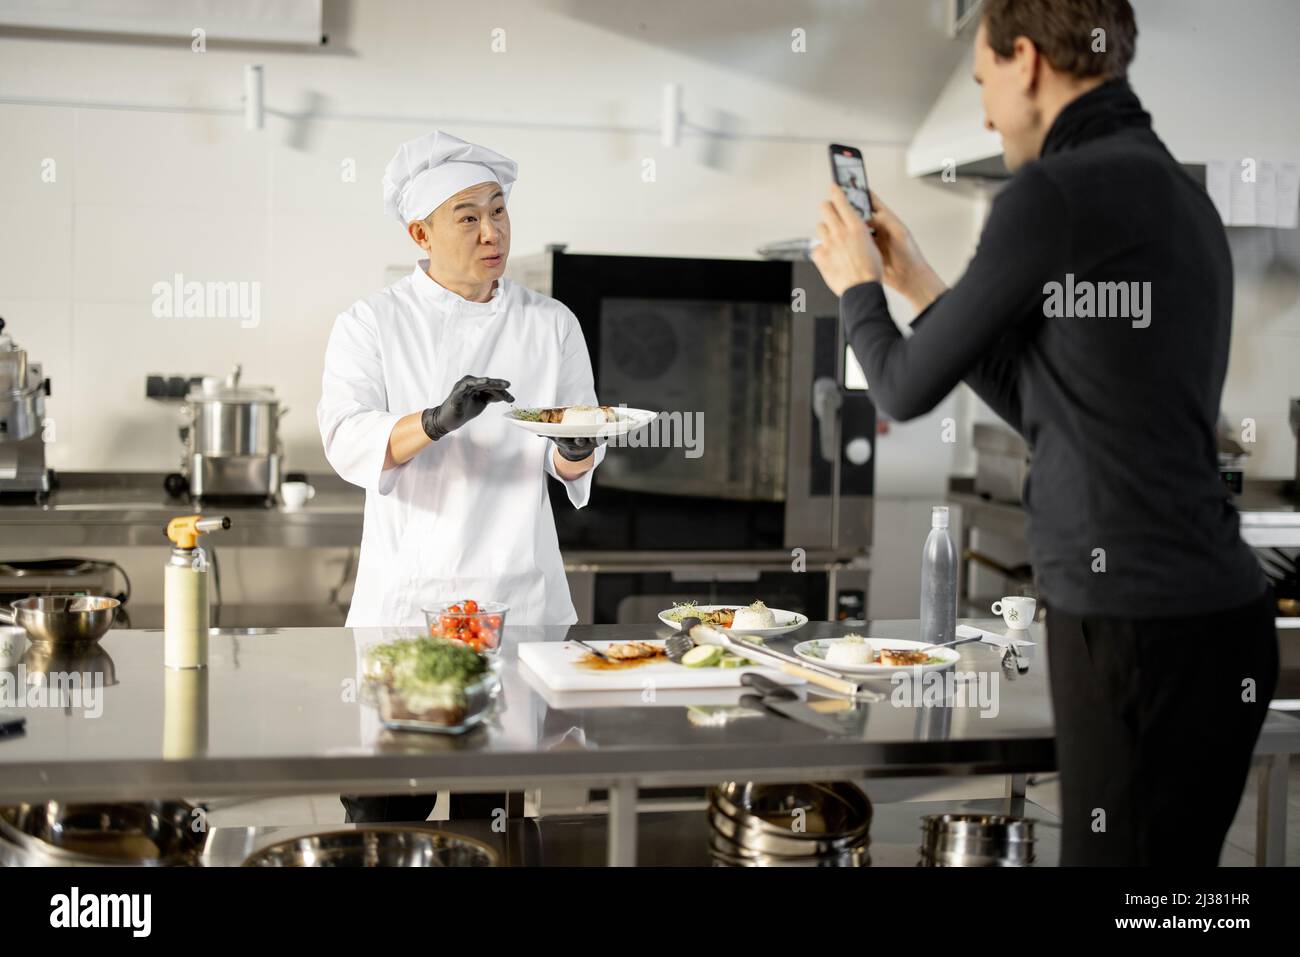 Asiatischer Koch in Uniform spricht über das gekochte Gericht, während er einen kulinarischen Blog in der professionellen Küche unterhält. Mann zeichnet ihn am Telefon auf. Konzept des kulinarischen Videobloggens Stockfoto